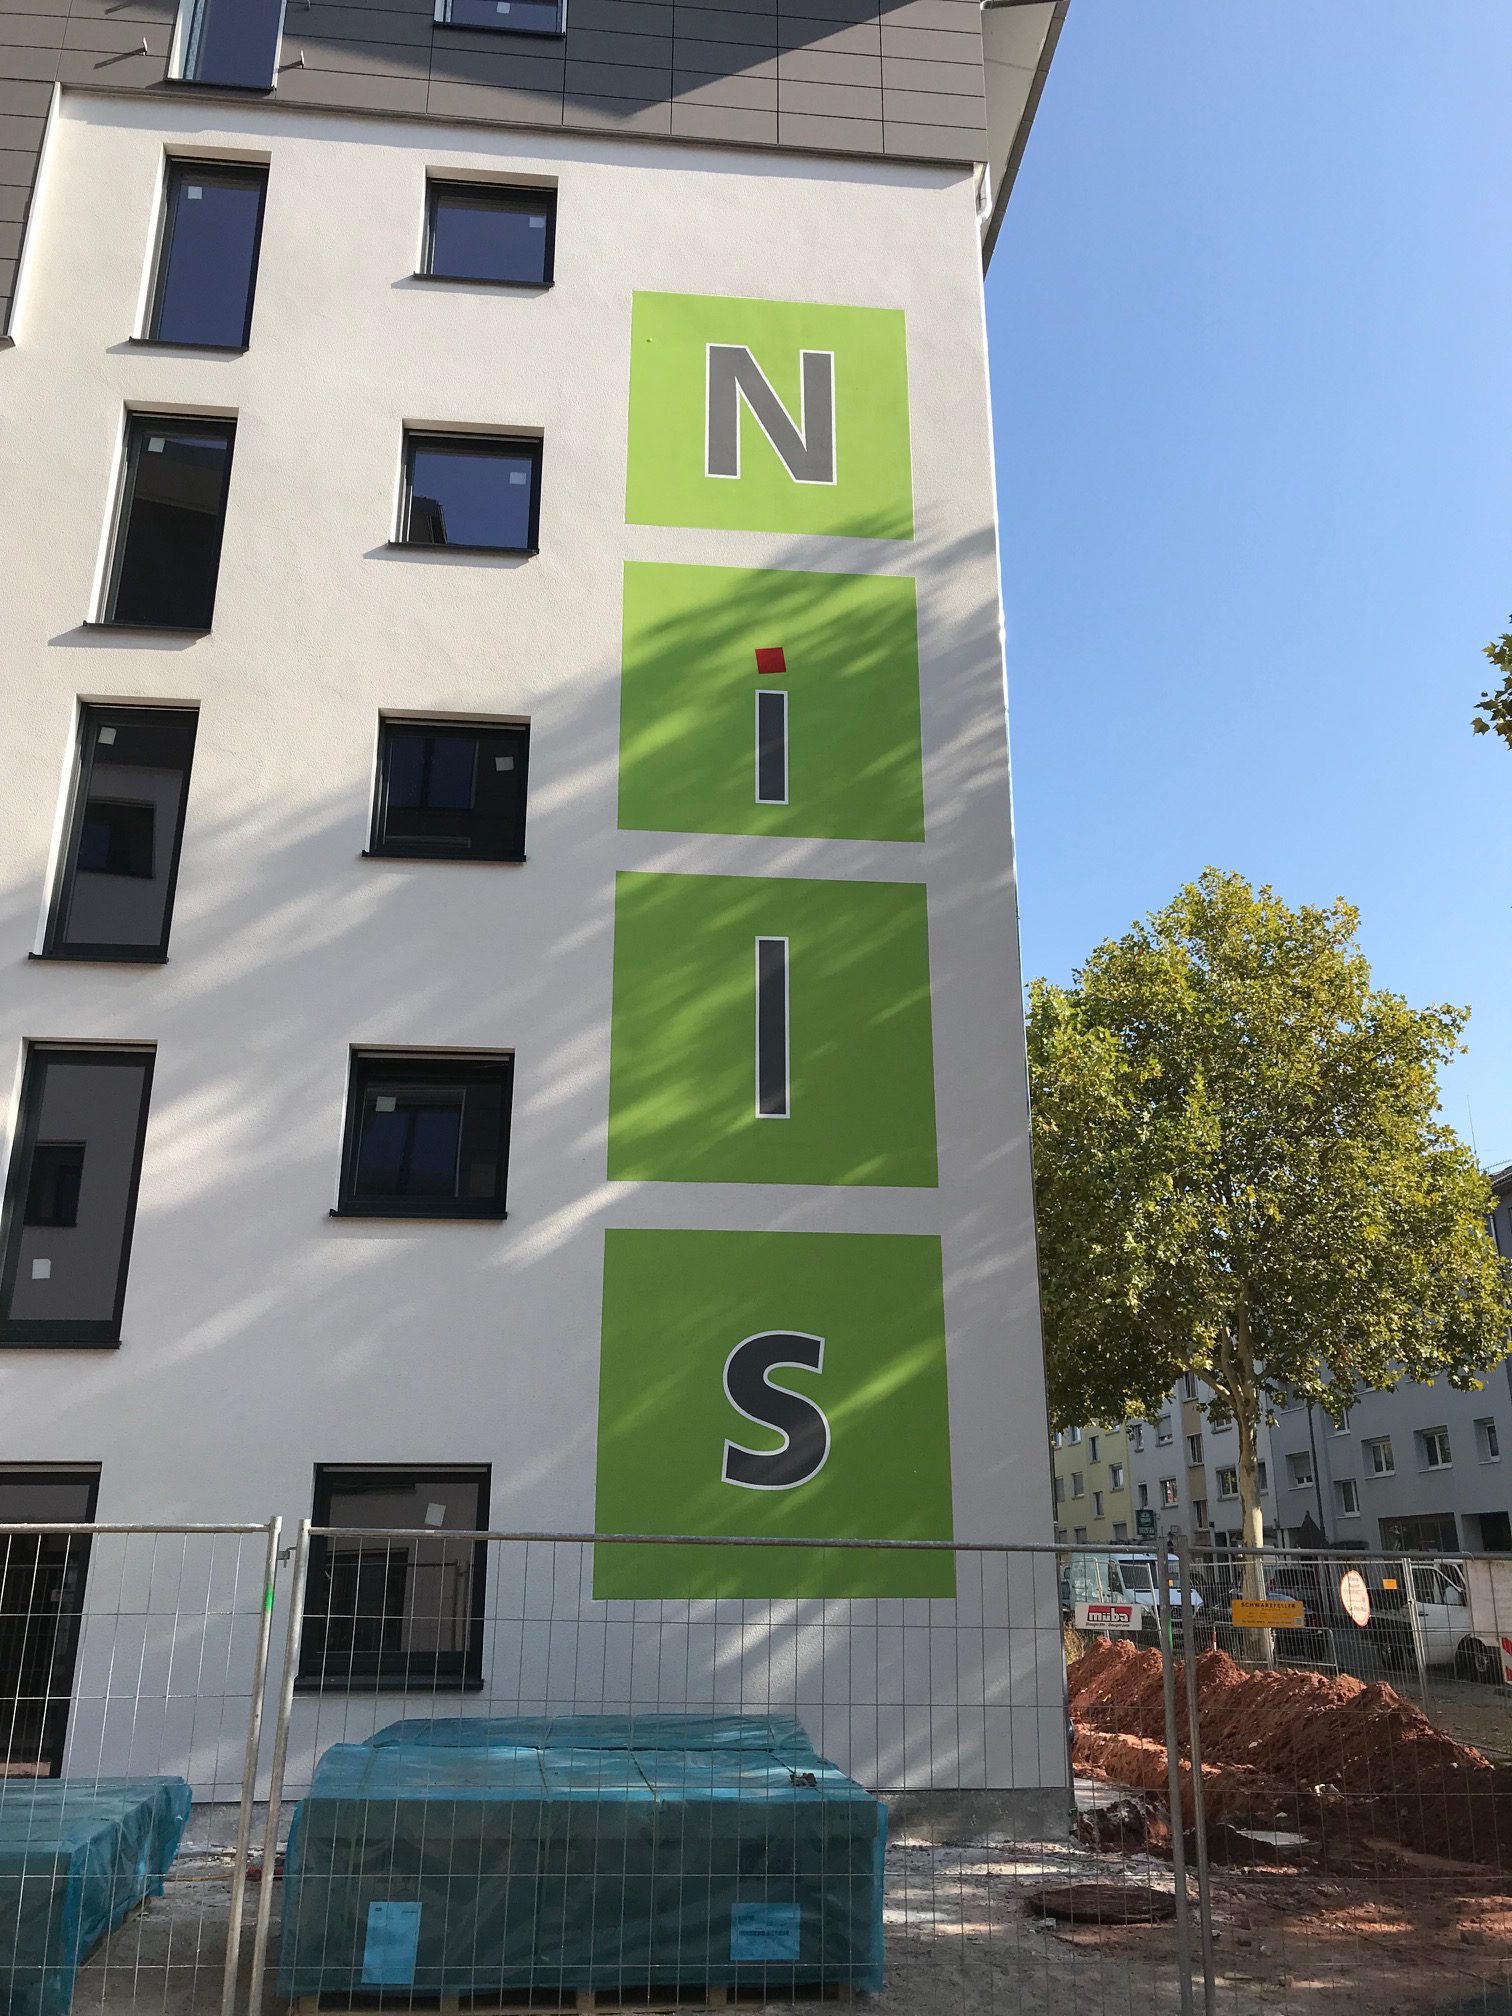 Willkommen zuhause bei „Nils – Wohnen im Quartier“ im Grübentälchen